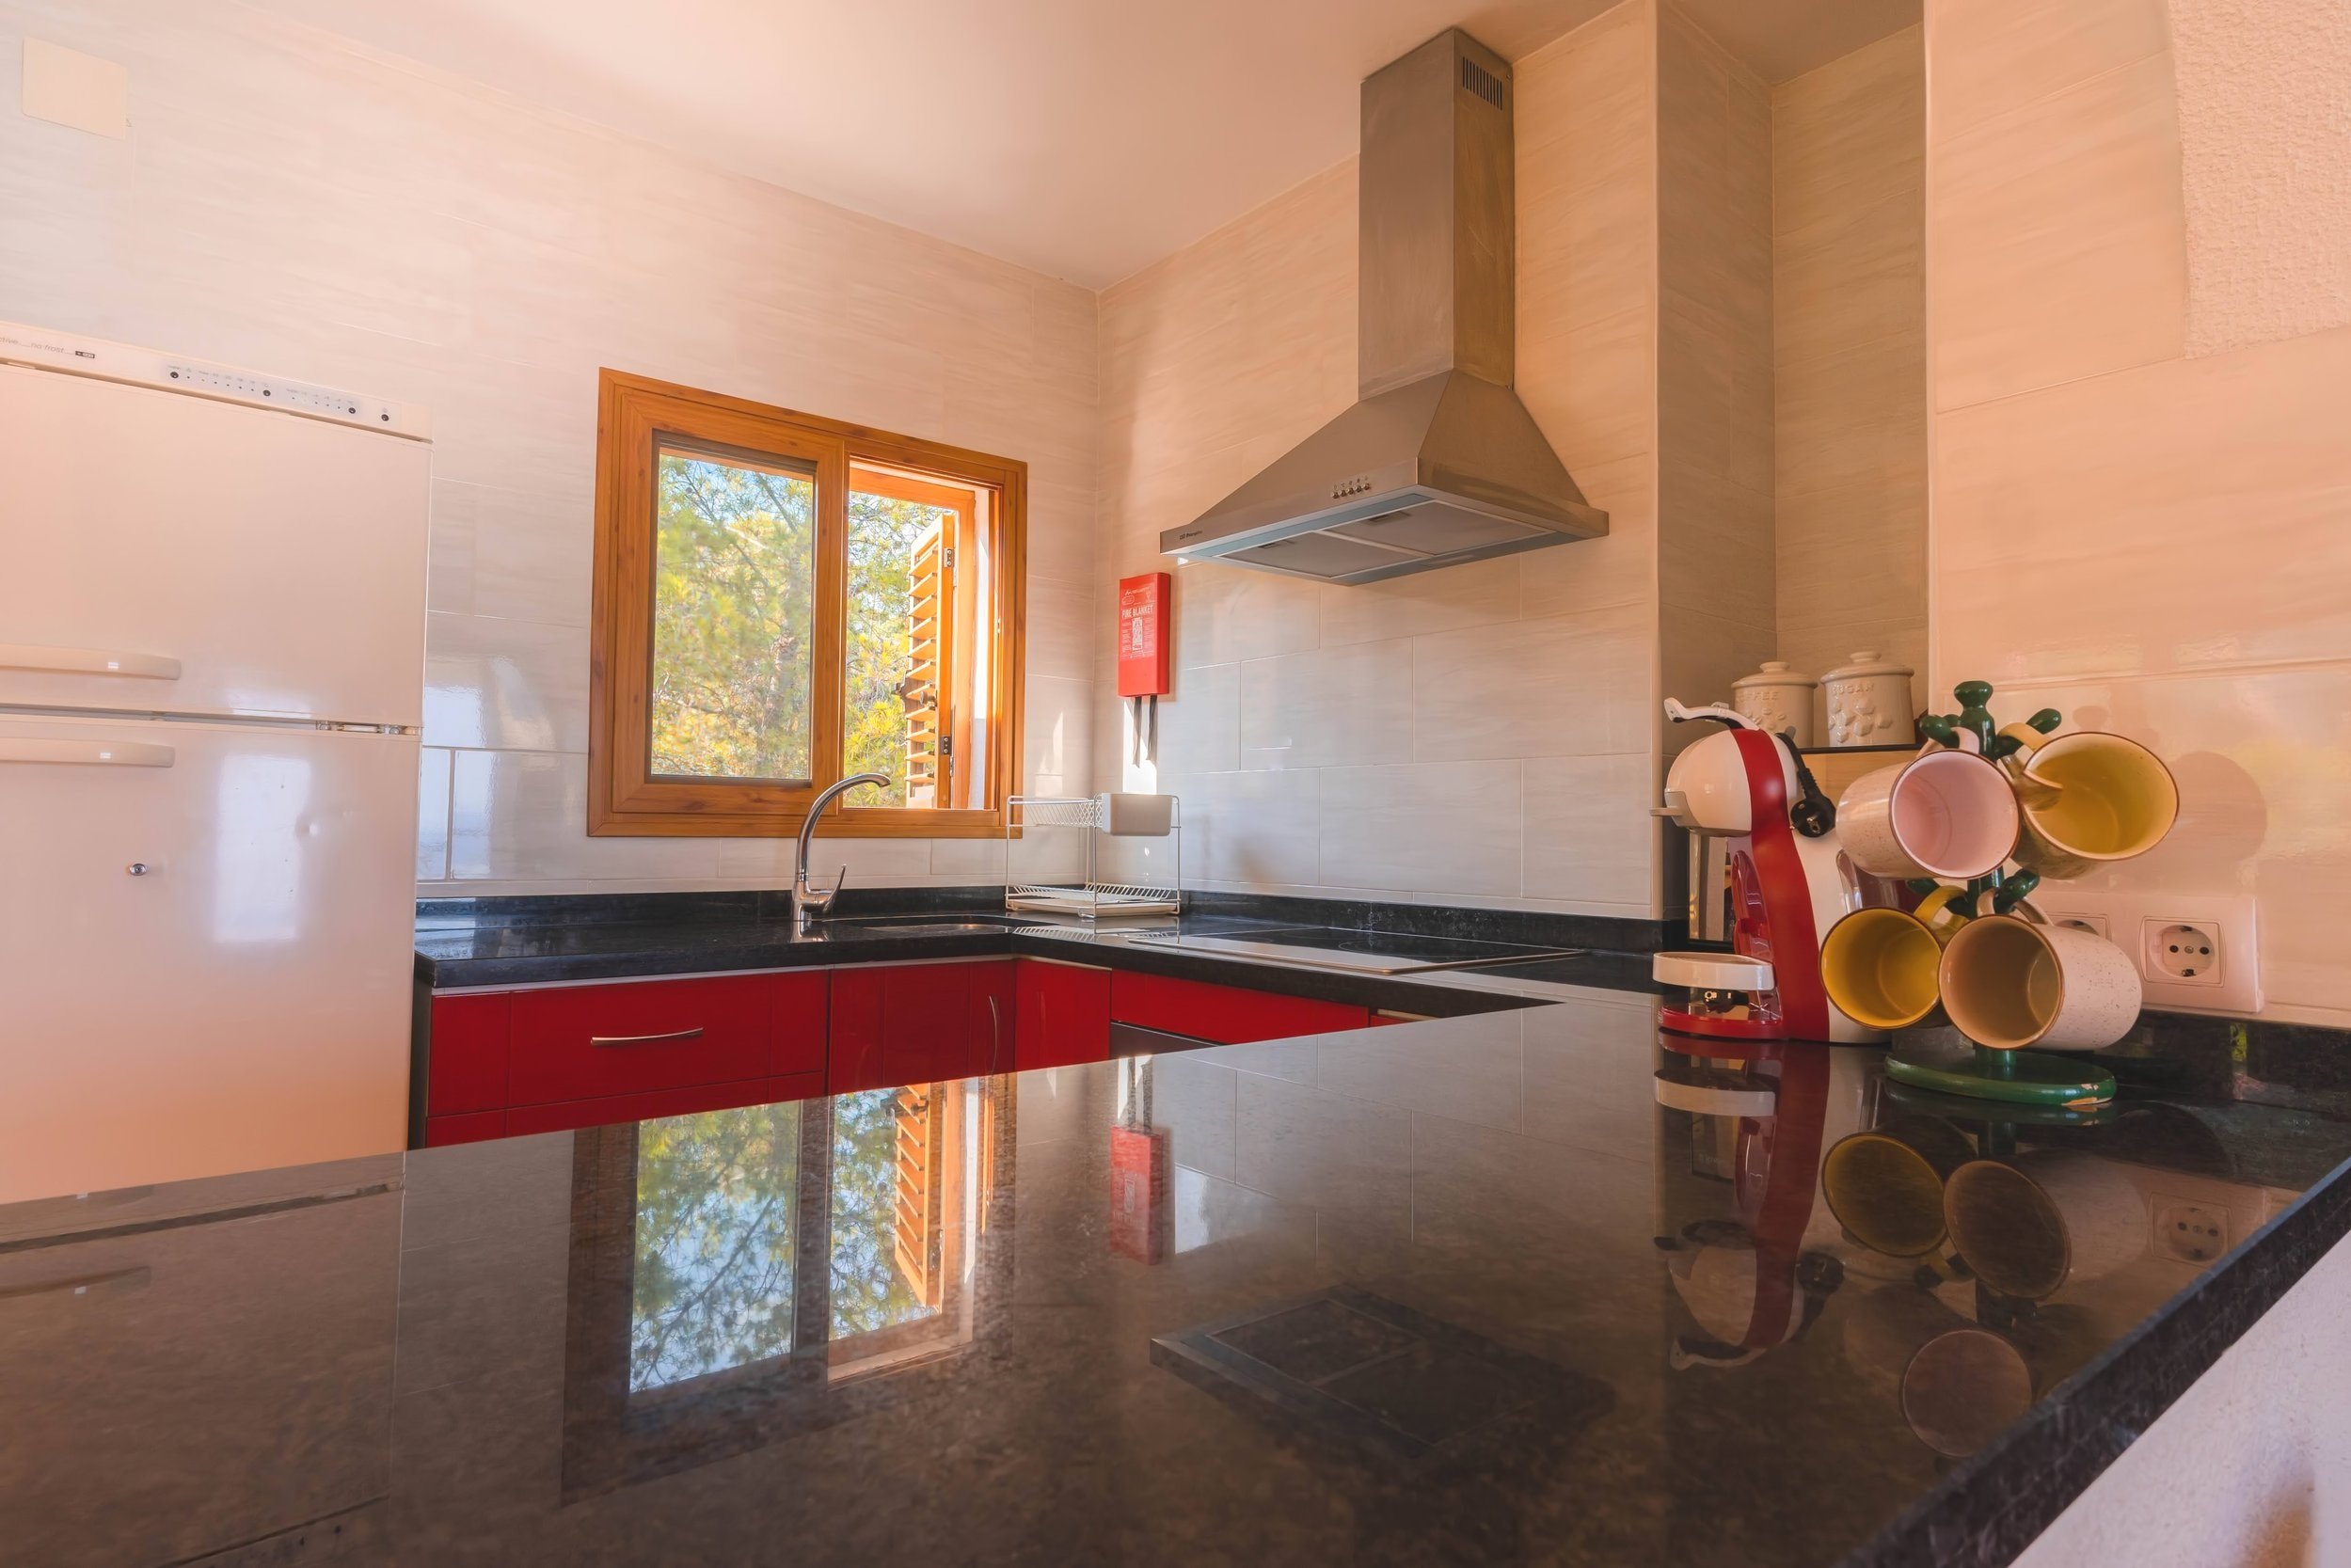 Open kitchen with granite worktops